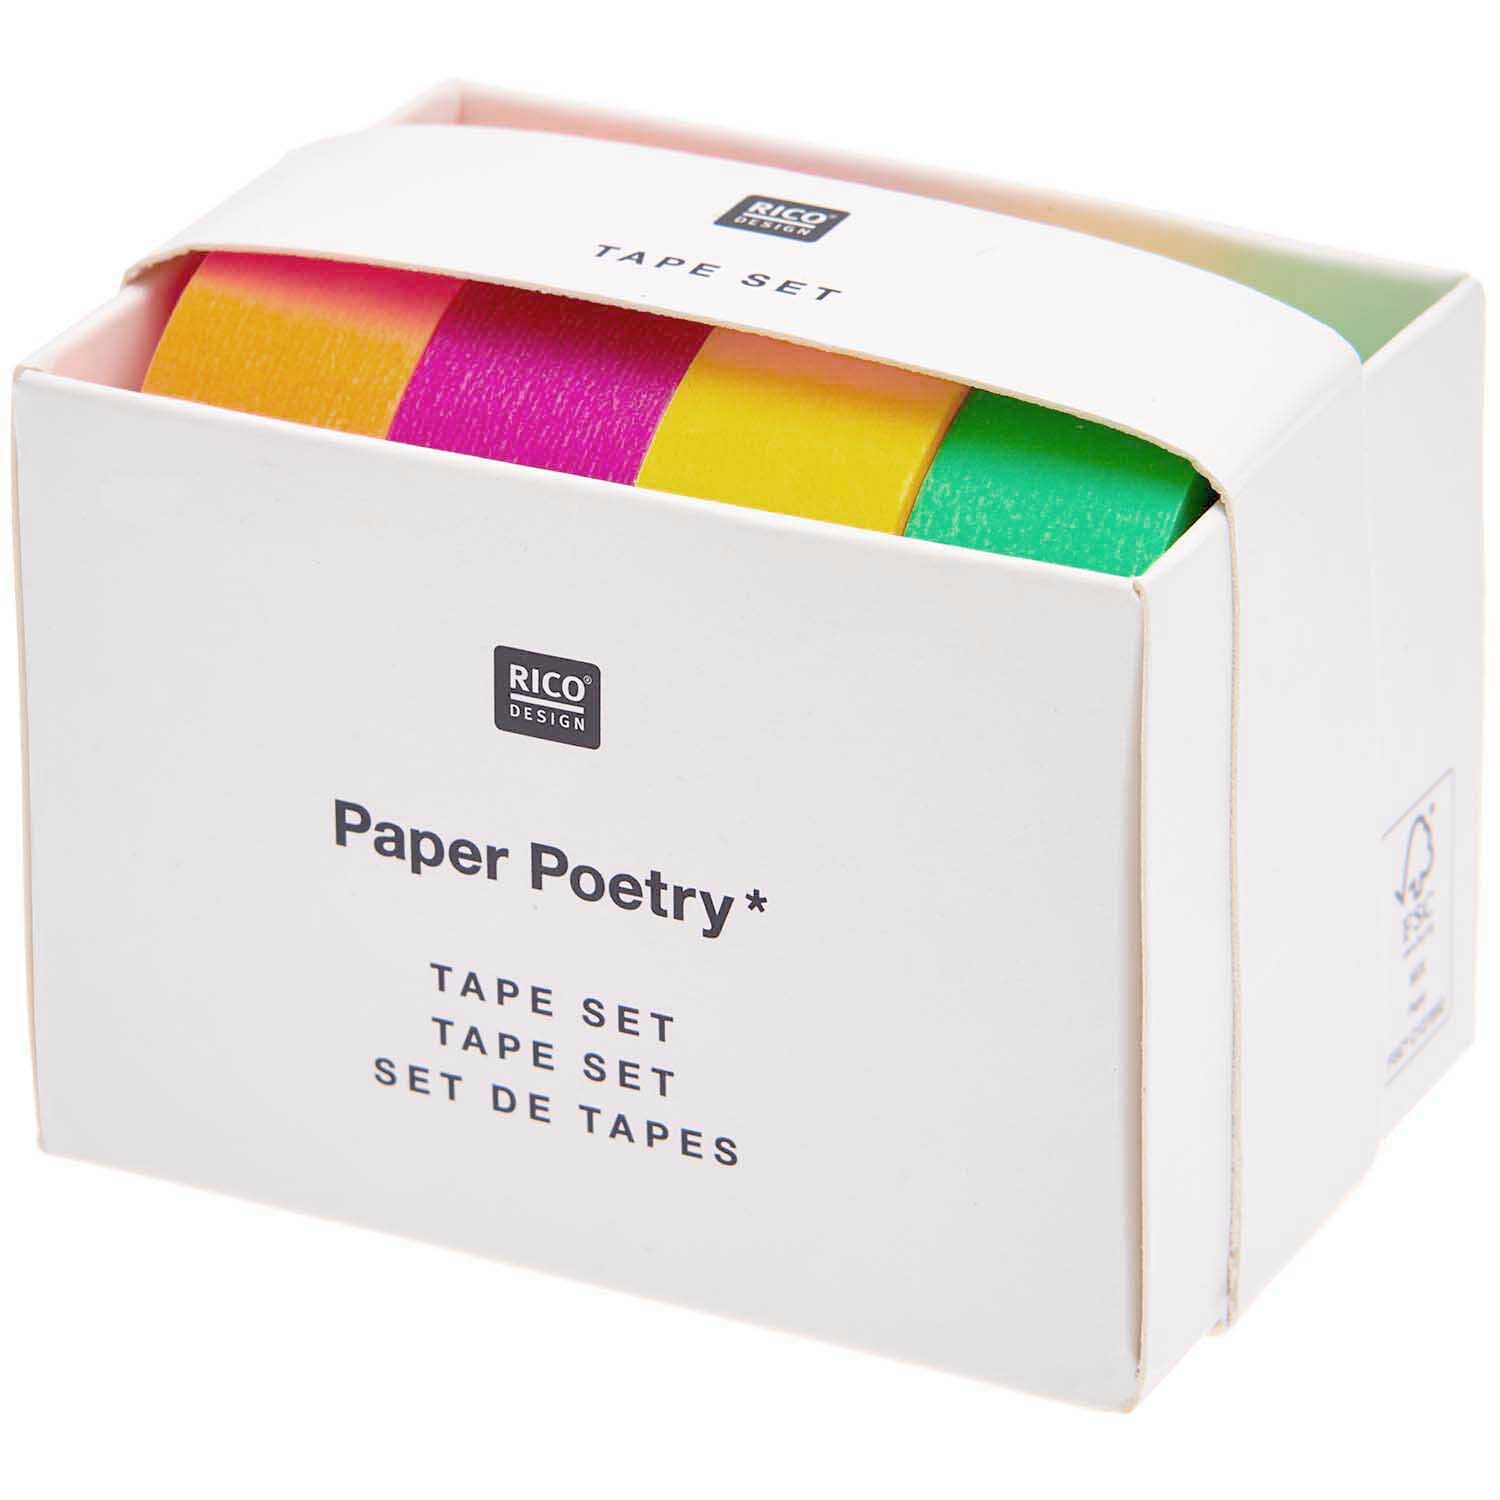 Paper Poetry Tape Set Neon klassisch 15mm 10m 4teilig